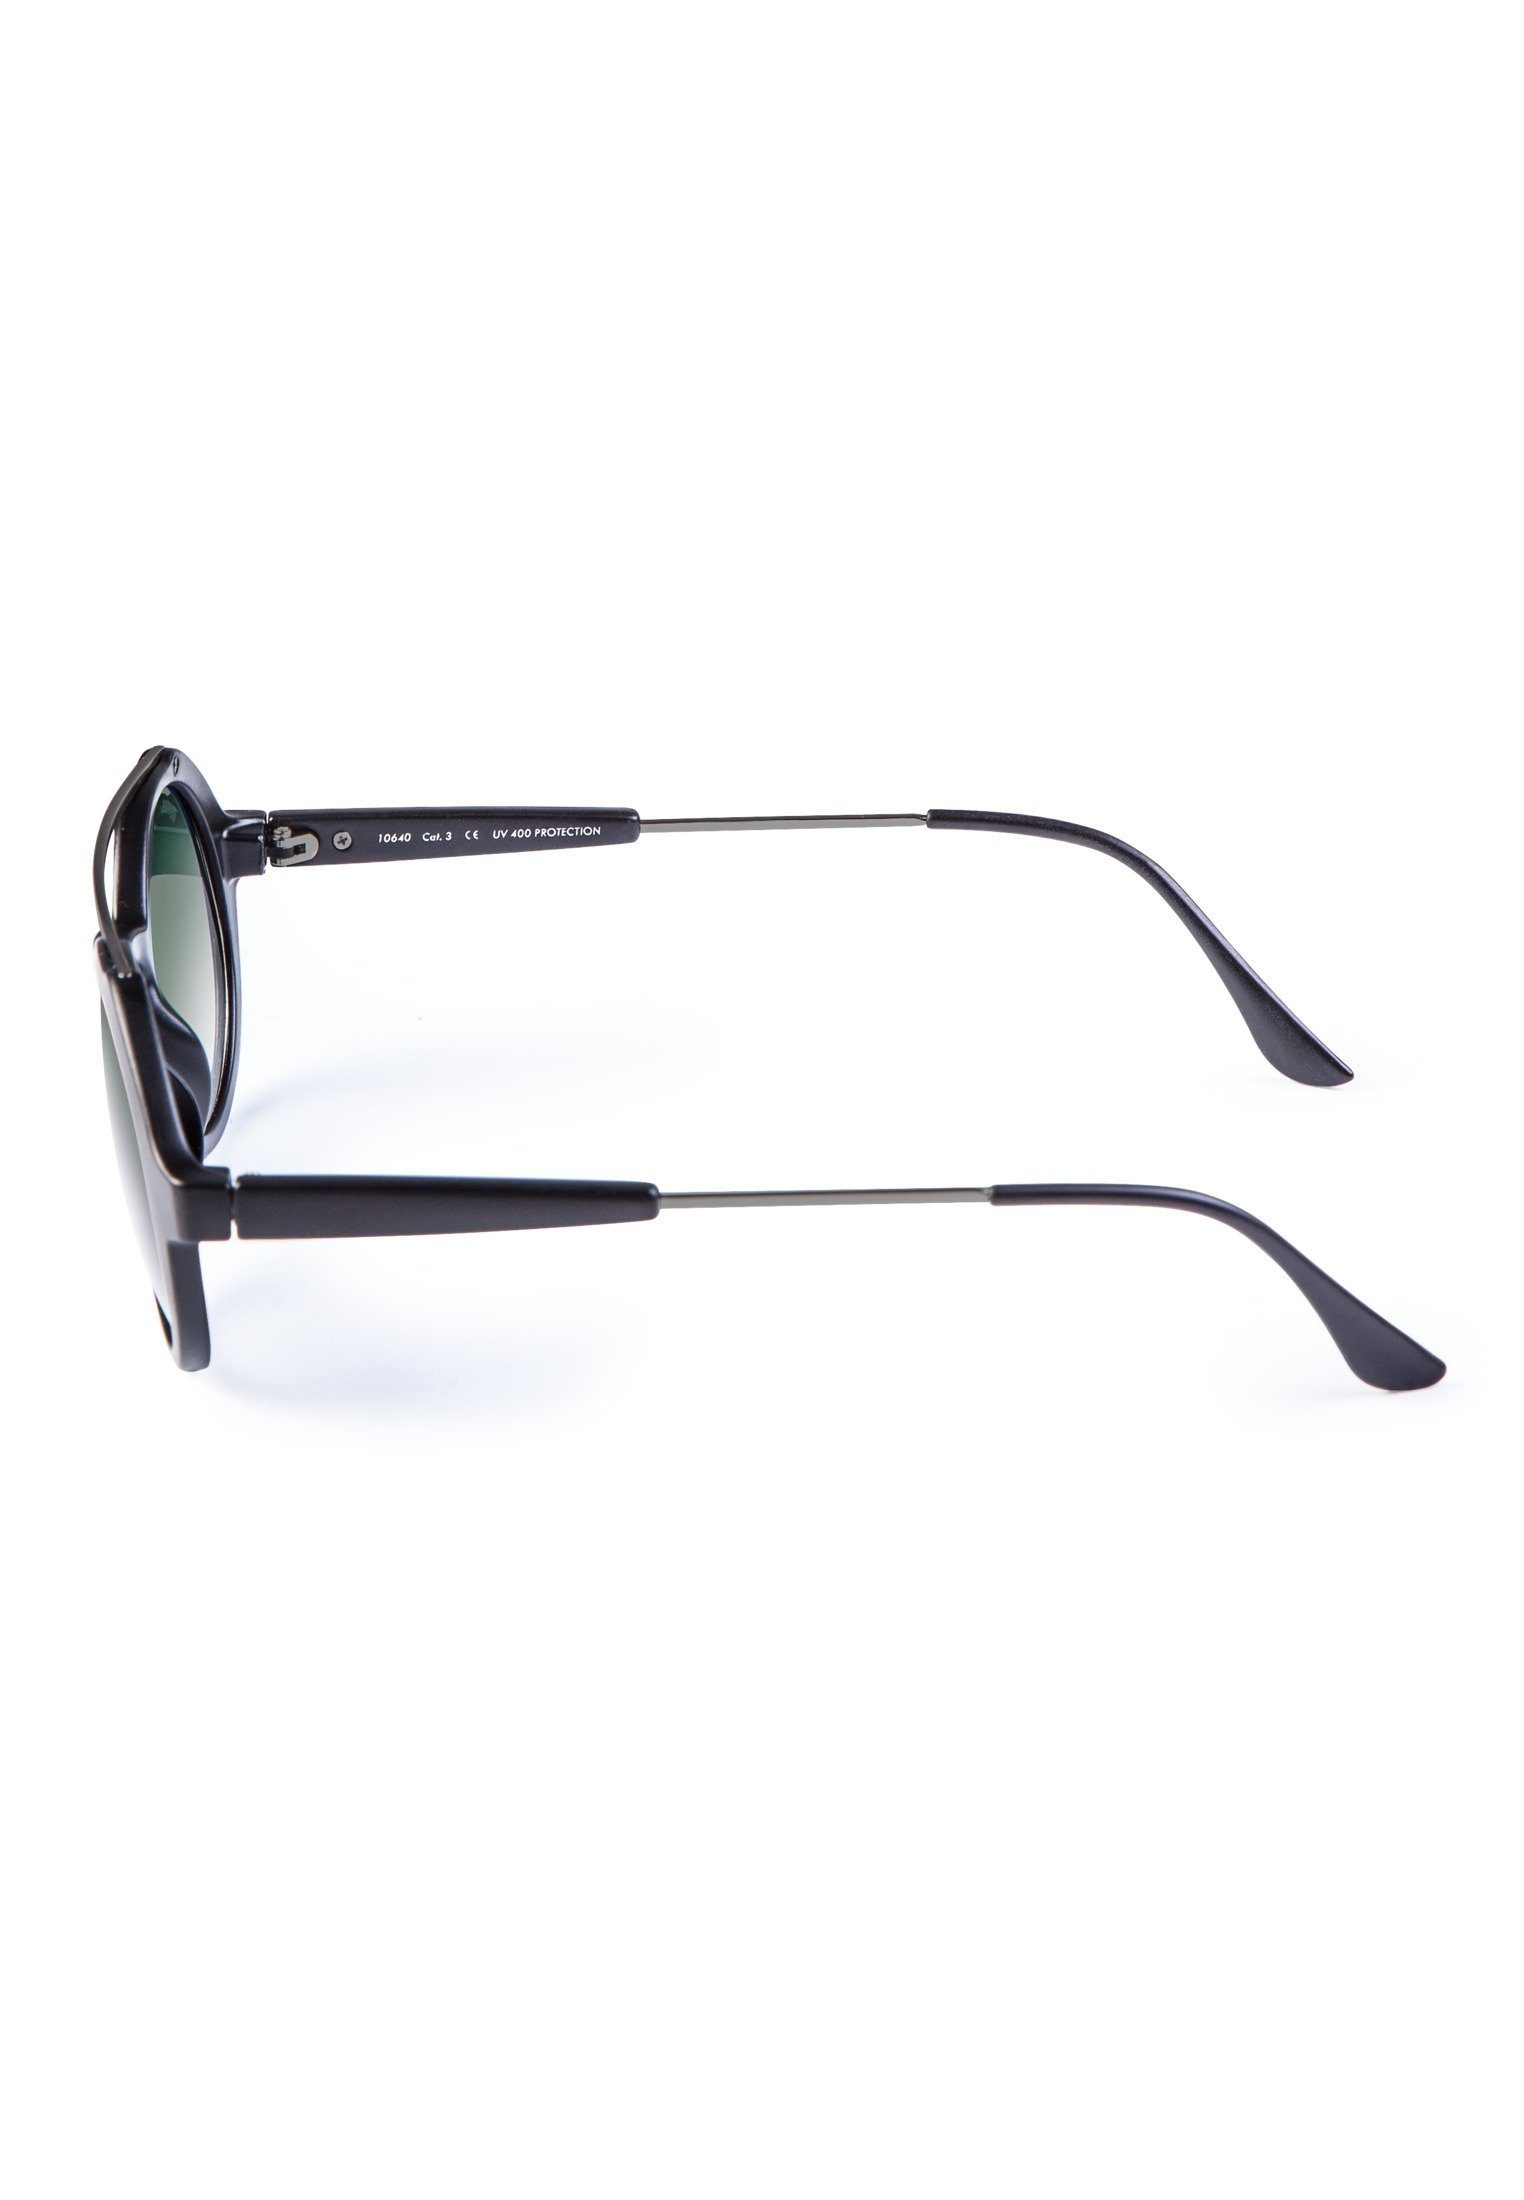 Retro Sunglasses Space Accessoires blk/grn MSTRDS Sonnenbrille